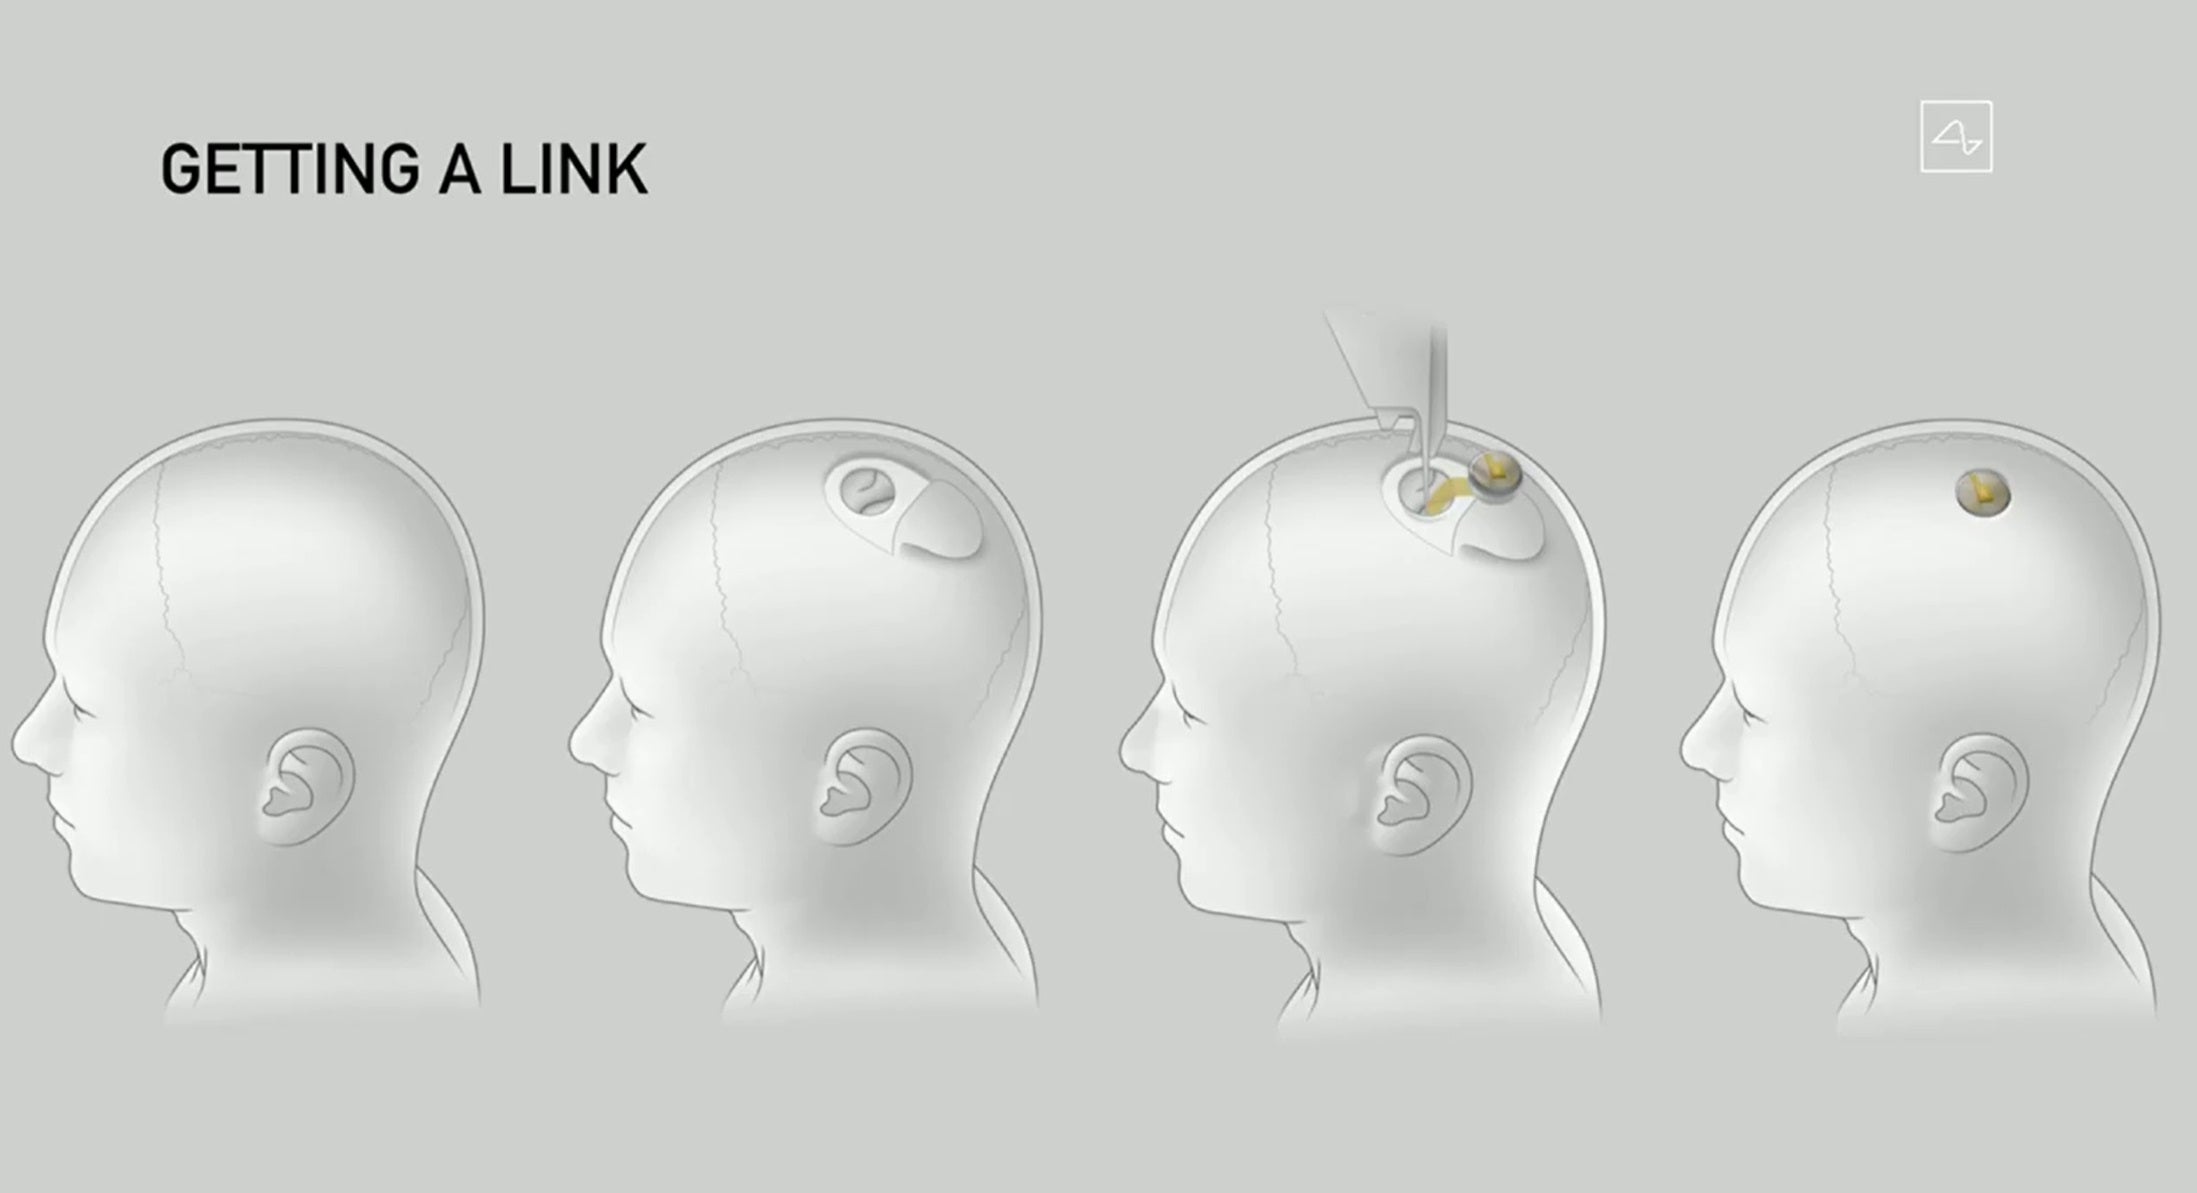 Elon Musk dijo que el dispositivo Neuralink reemplazaría un trozo de cráneo sin causar ningún daño duradero al cerebro.